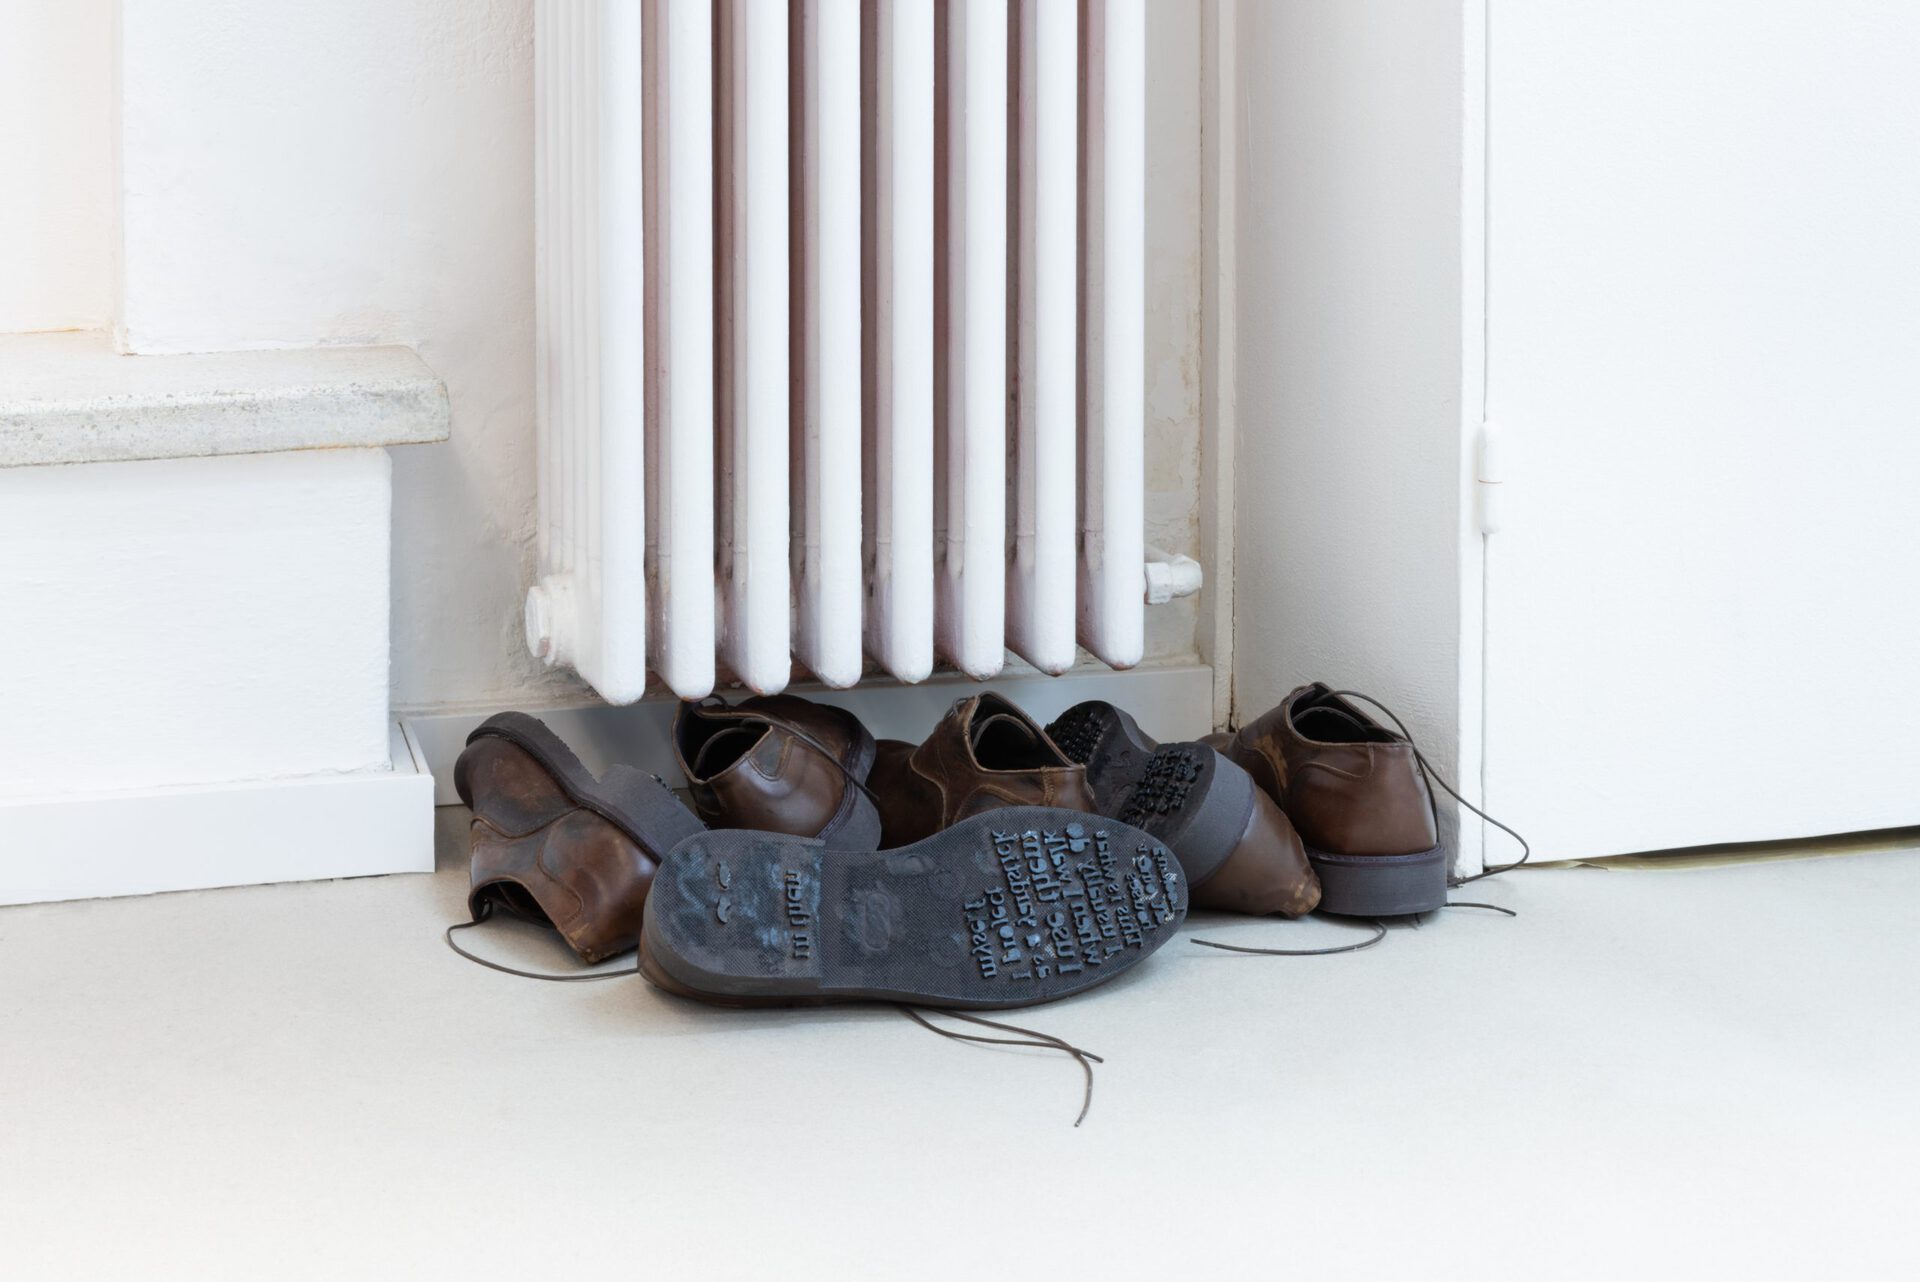 Francesco De Bernardi,  “Stroll”, Four pairs of shoes, wood, black paint, 2022